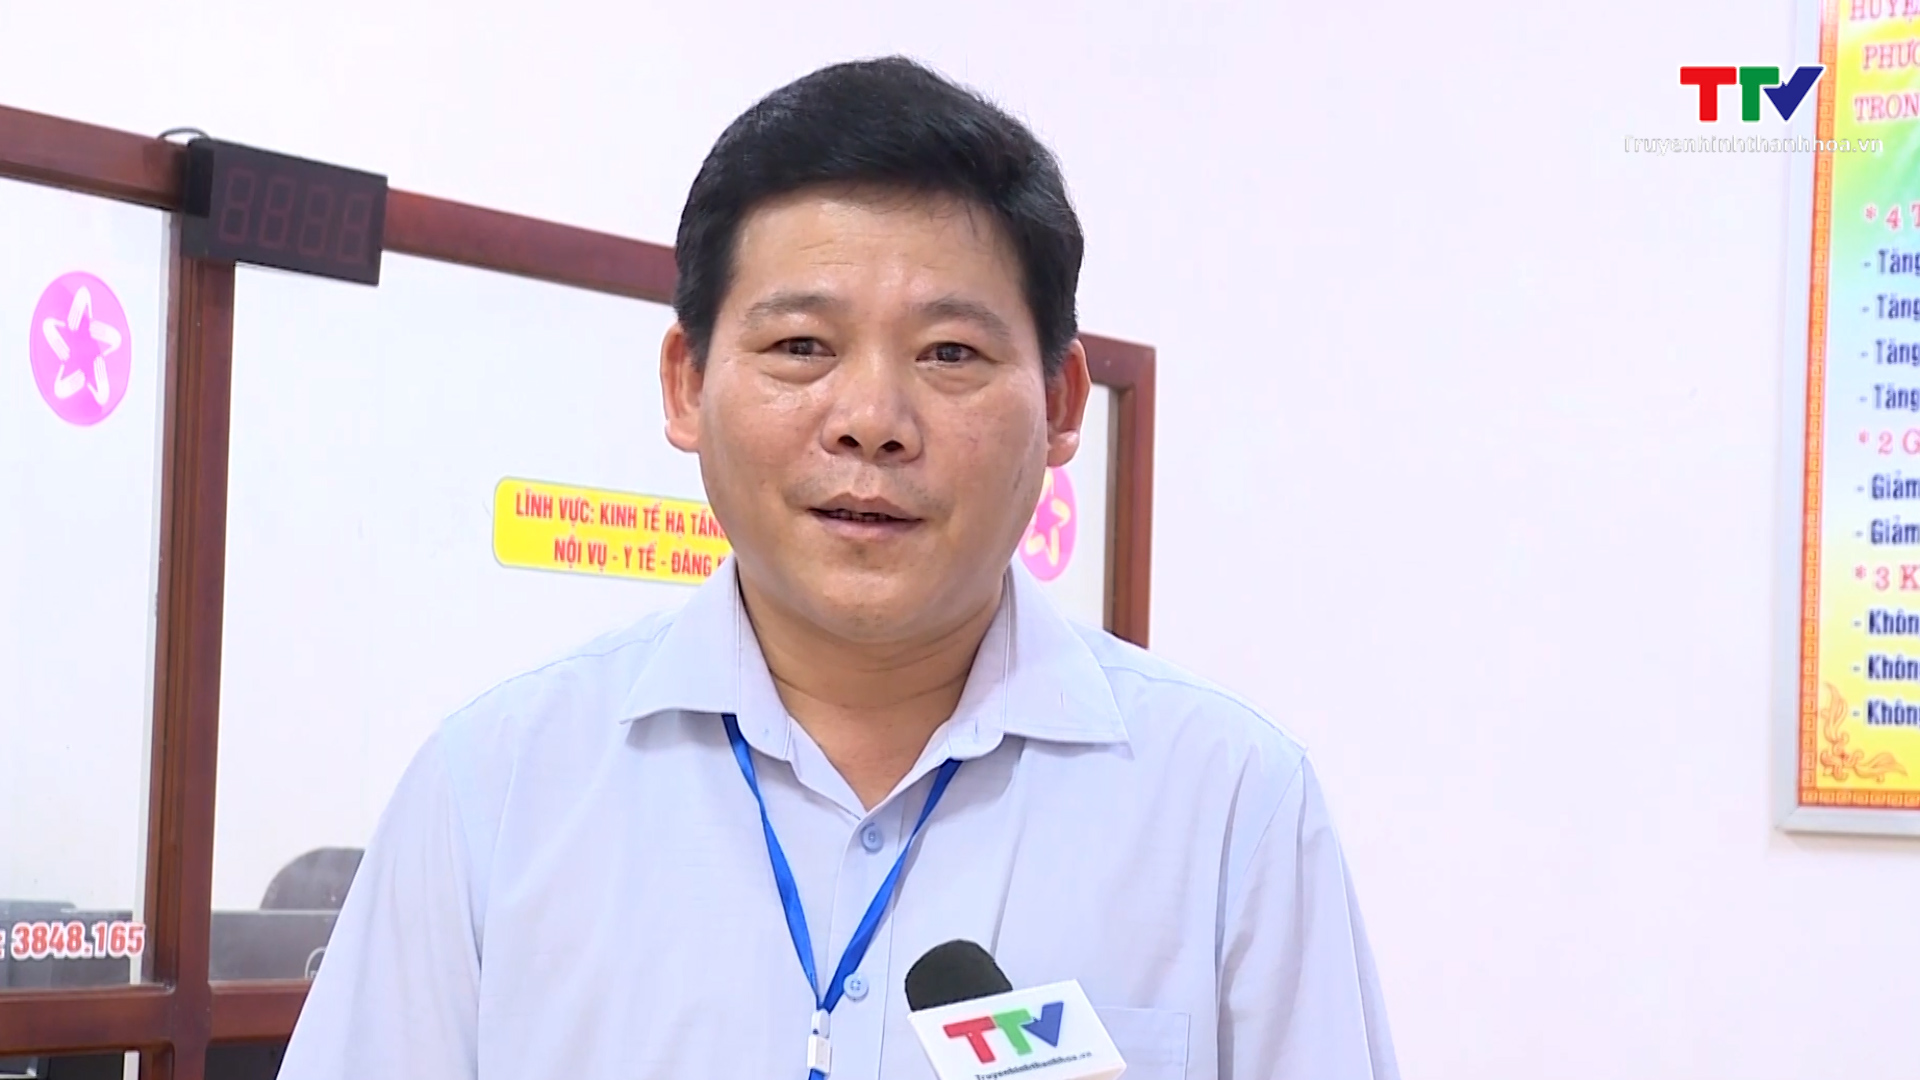 Chuyển đổi số để nâng cao năng lực phục vụ người dân, doanh nghiệp ở huyện Như Thanh - Ảnh 3.